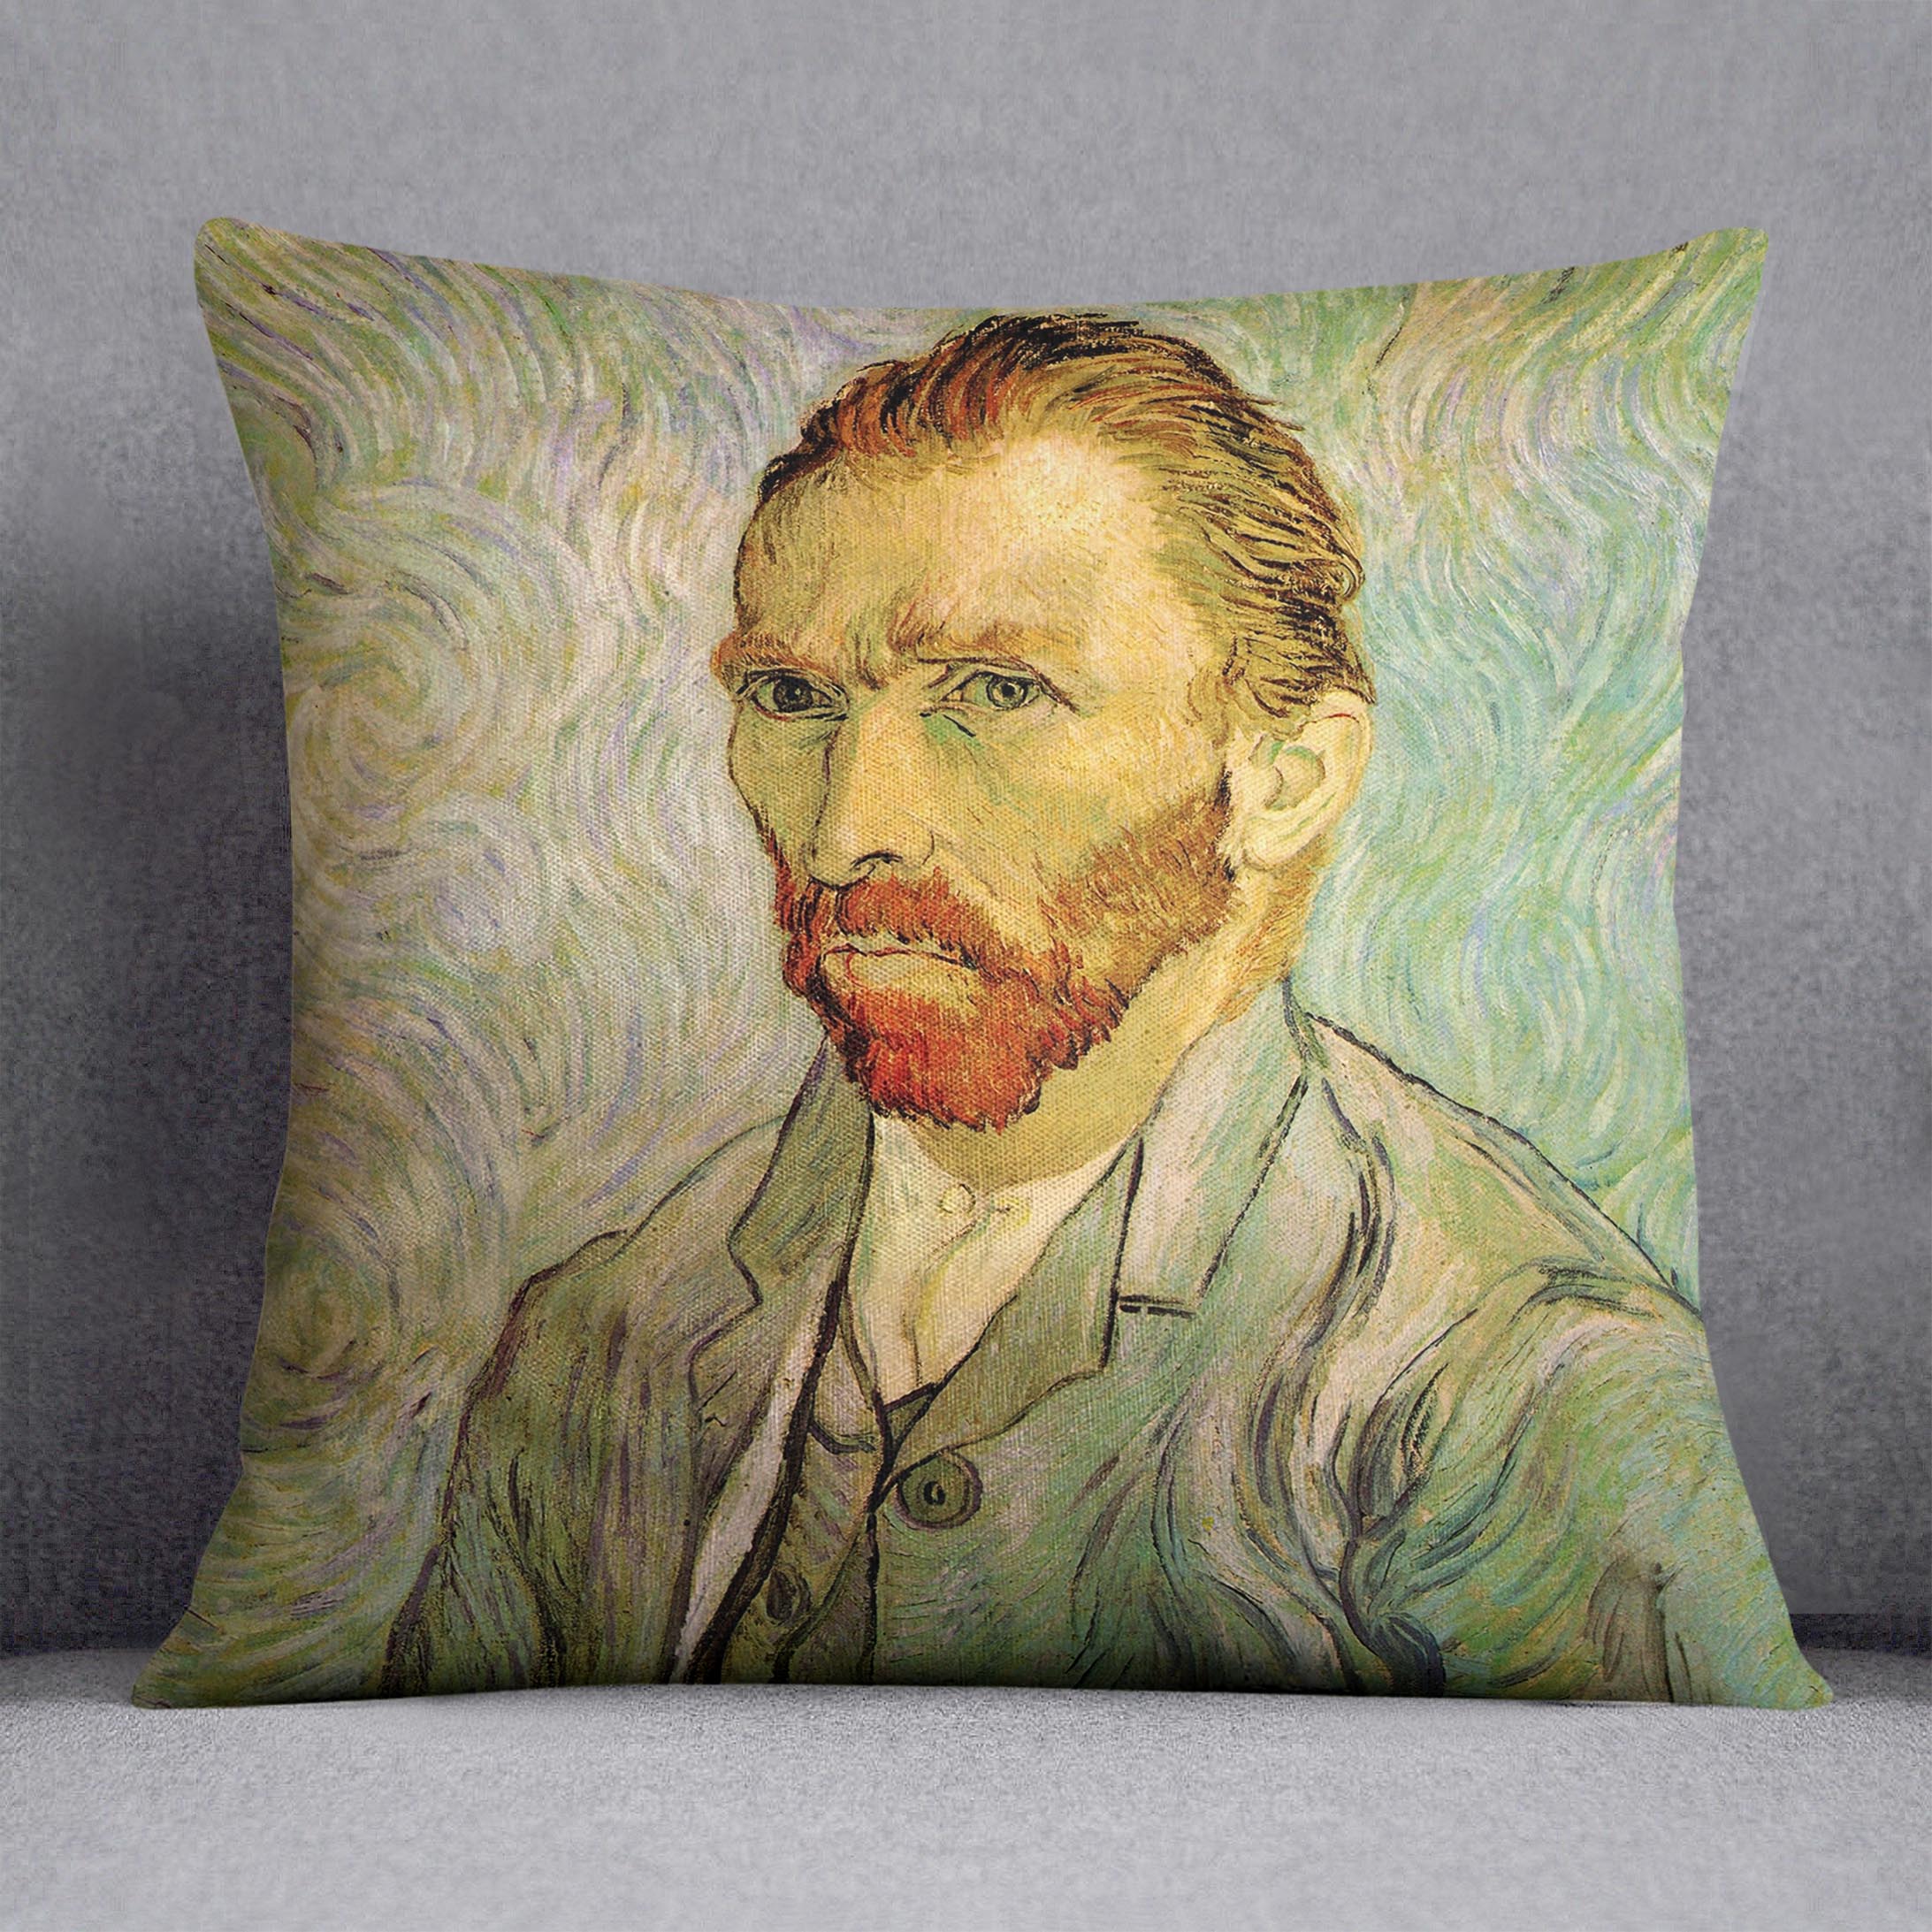 Self-Portrait 2 by Van Gogh Cushion